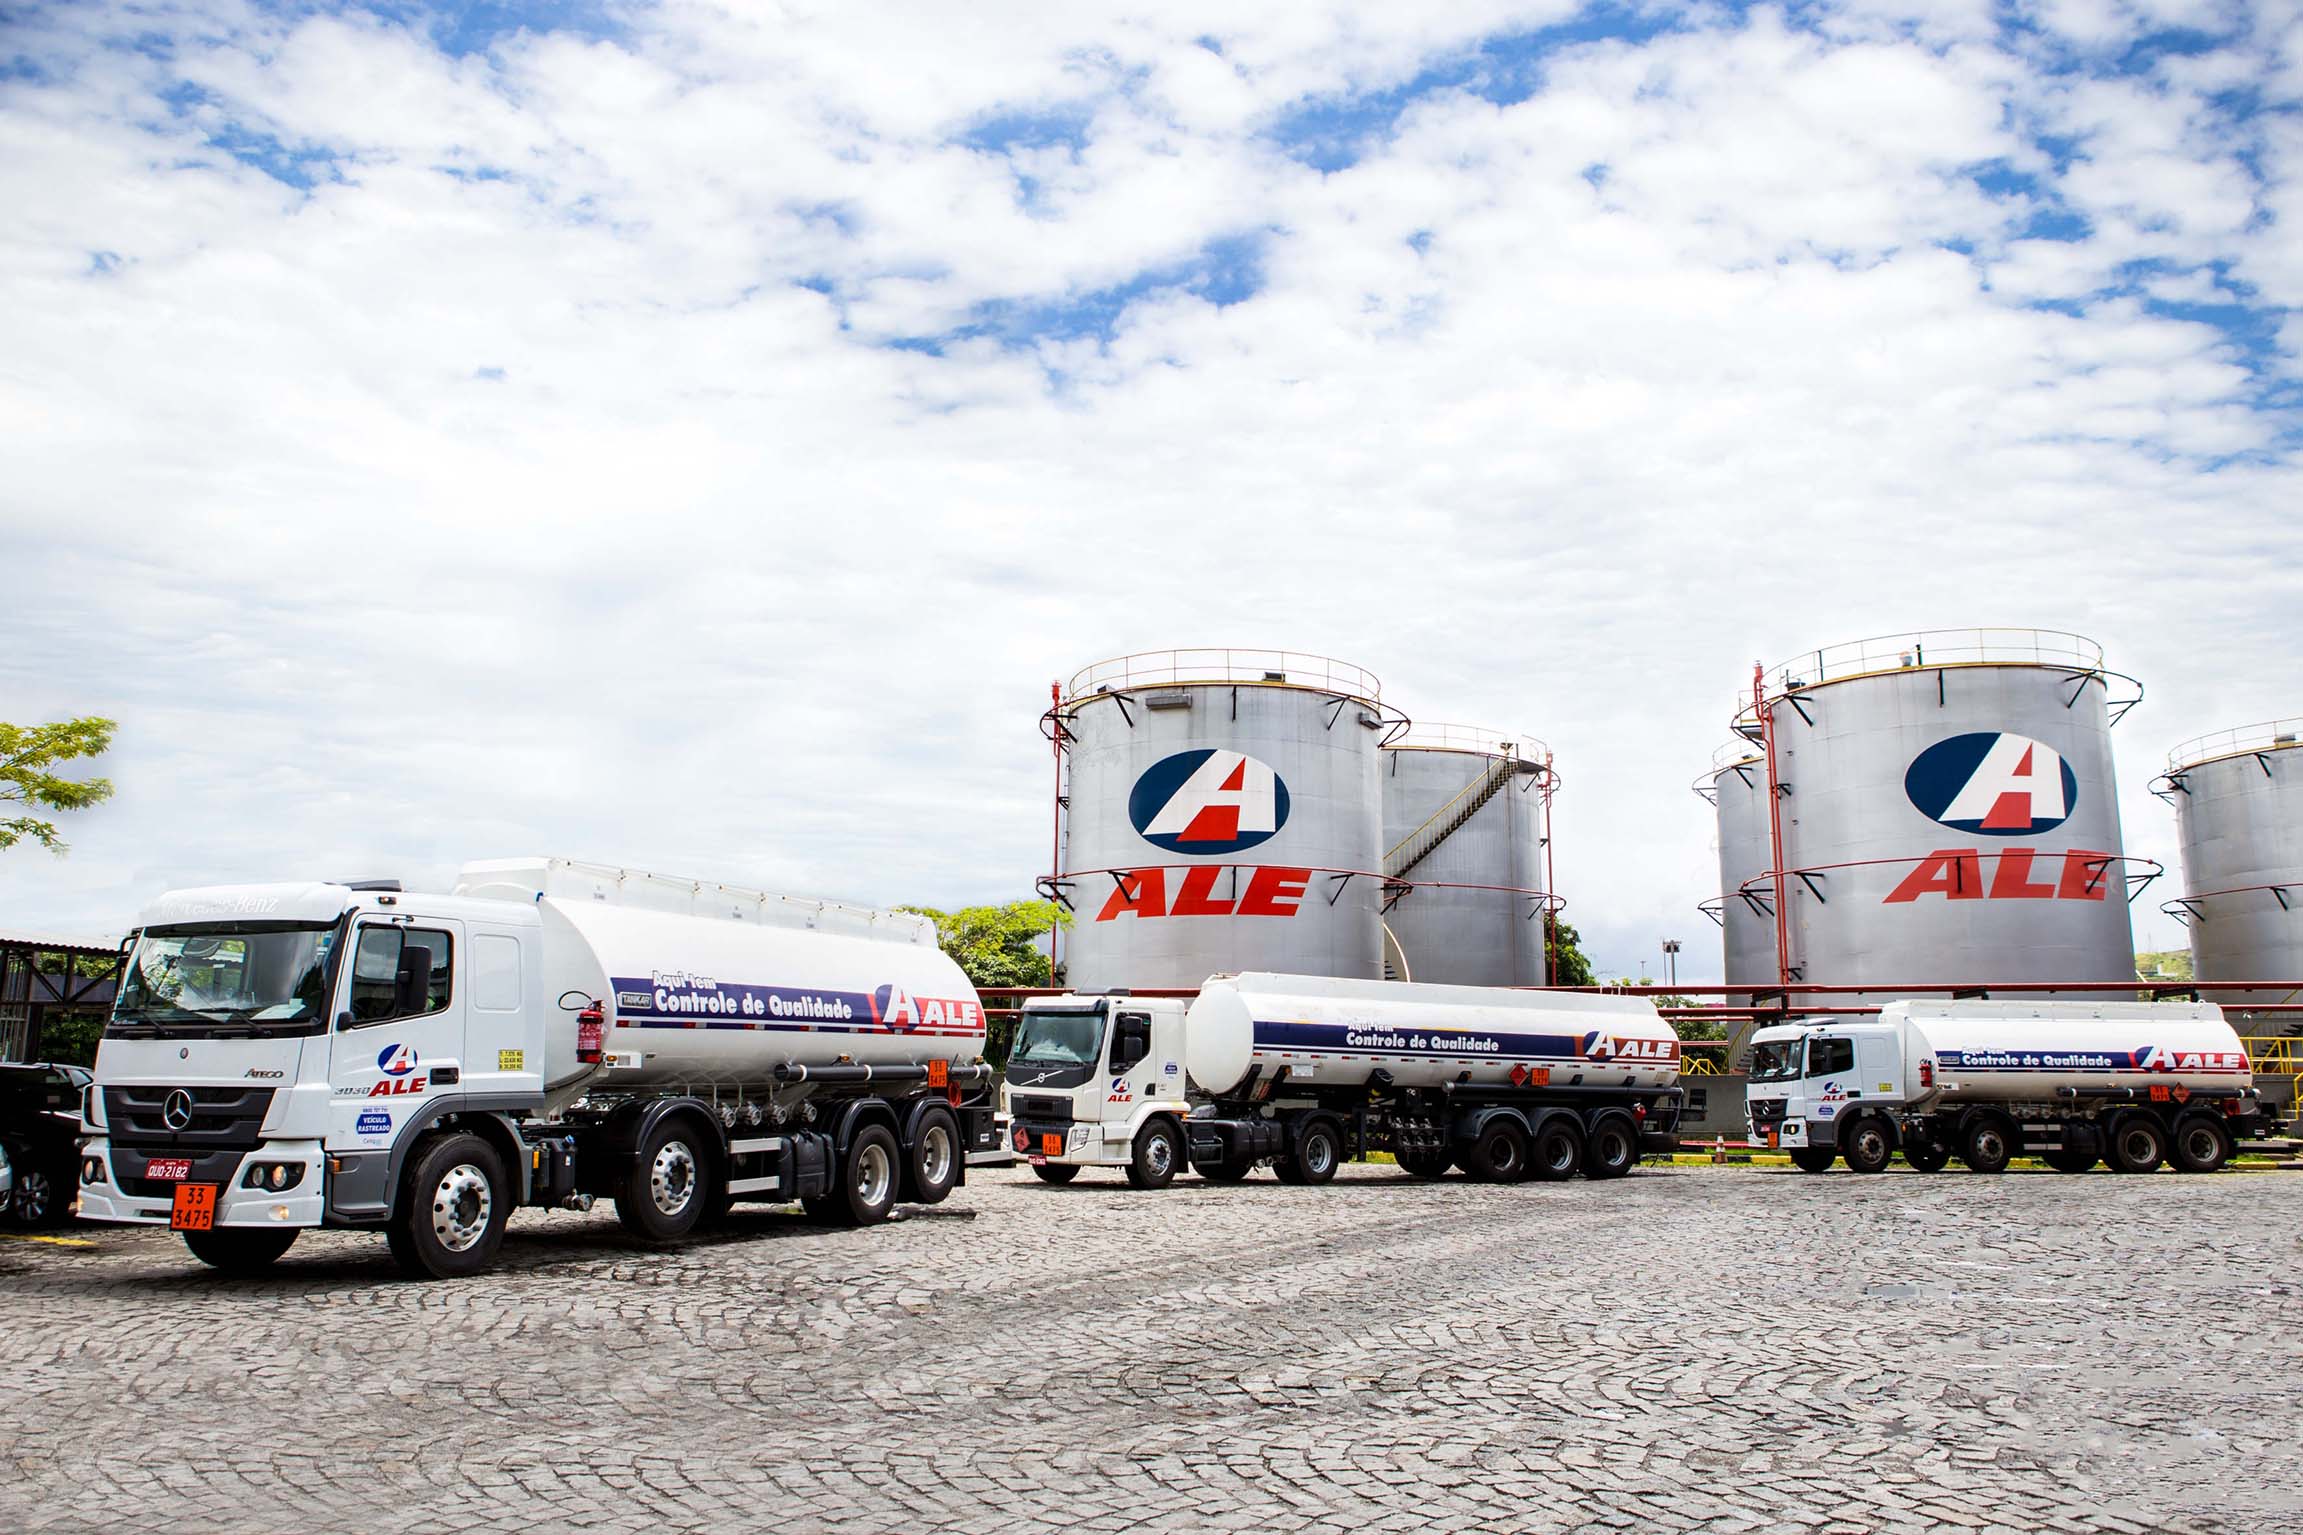 Caminhões na base de distribuição da Ale  - Foto: Gabriela Monteiro